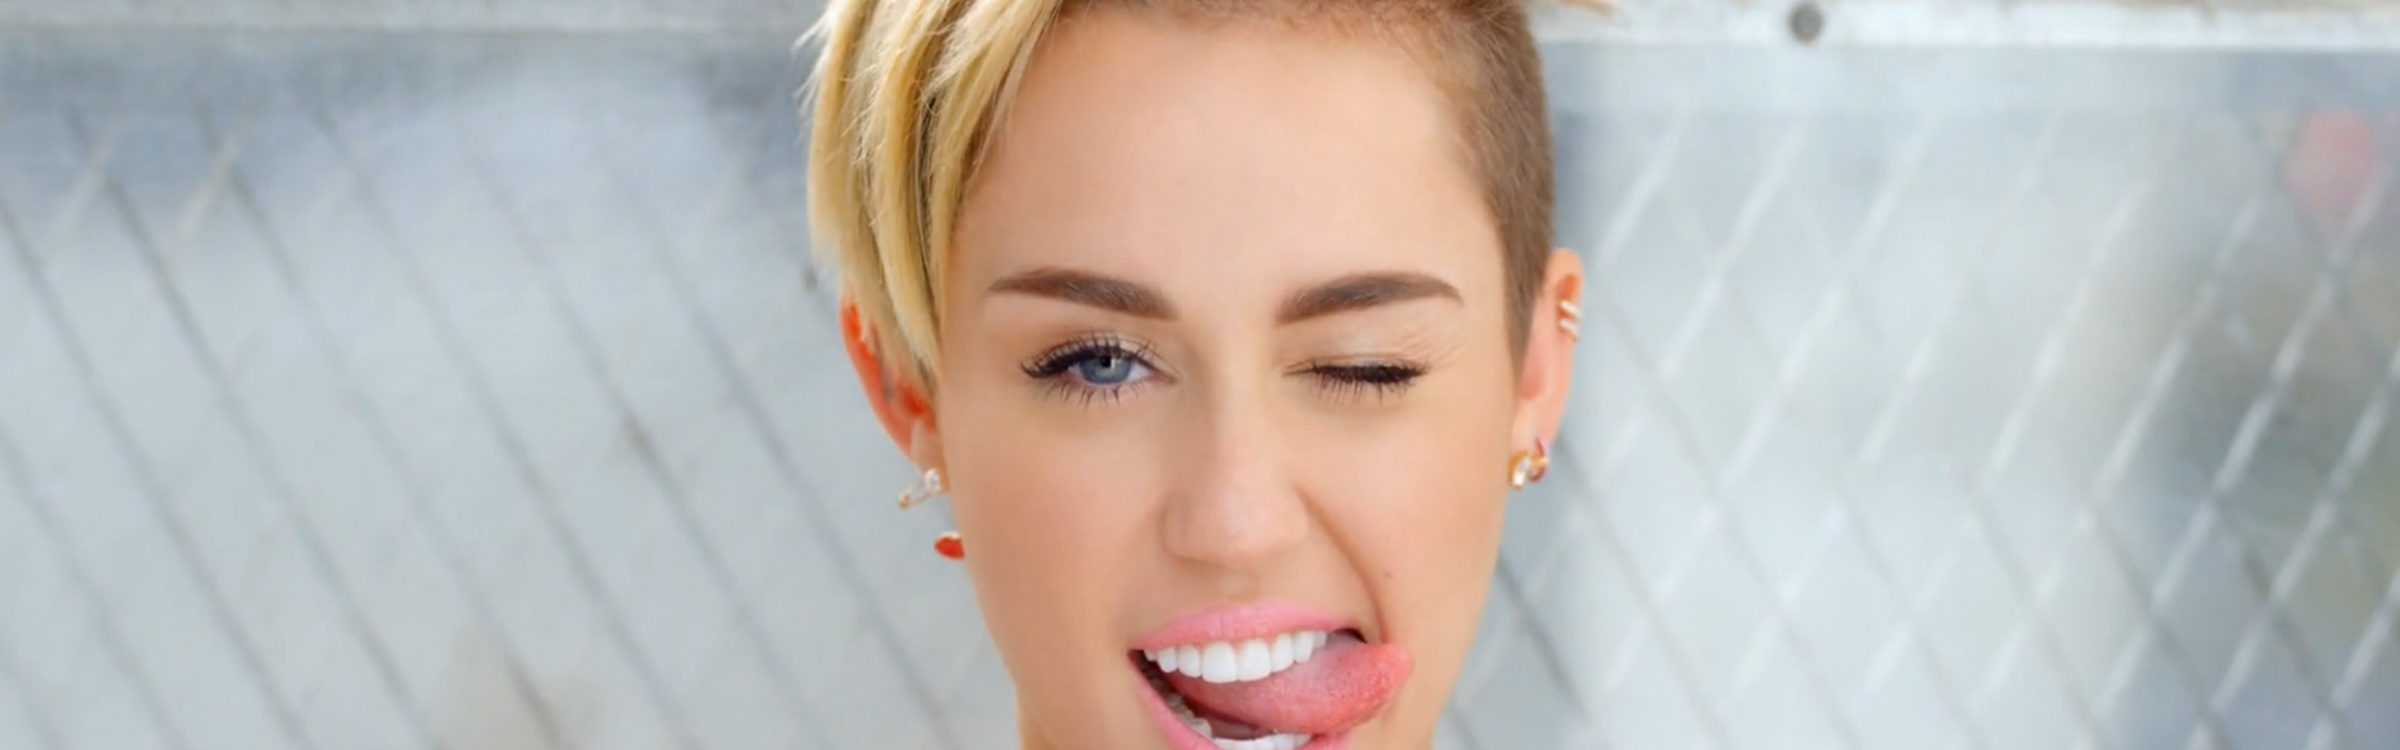 Miley cyrus header